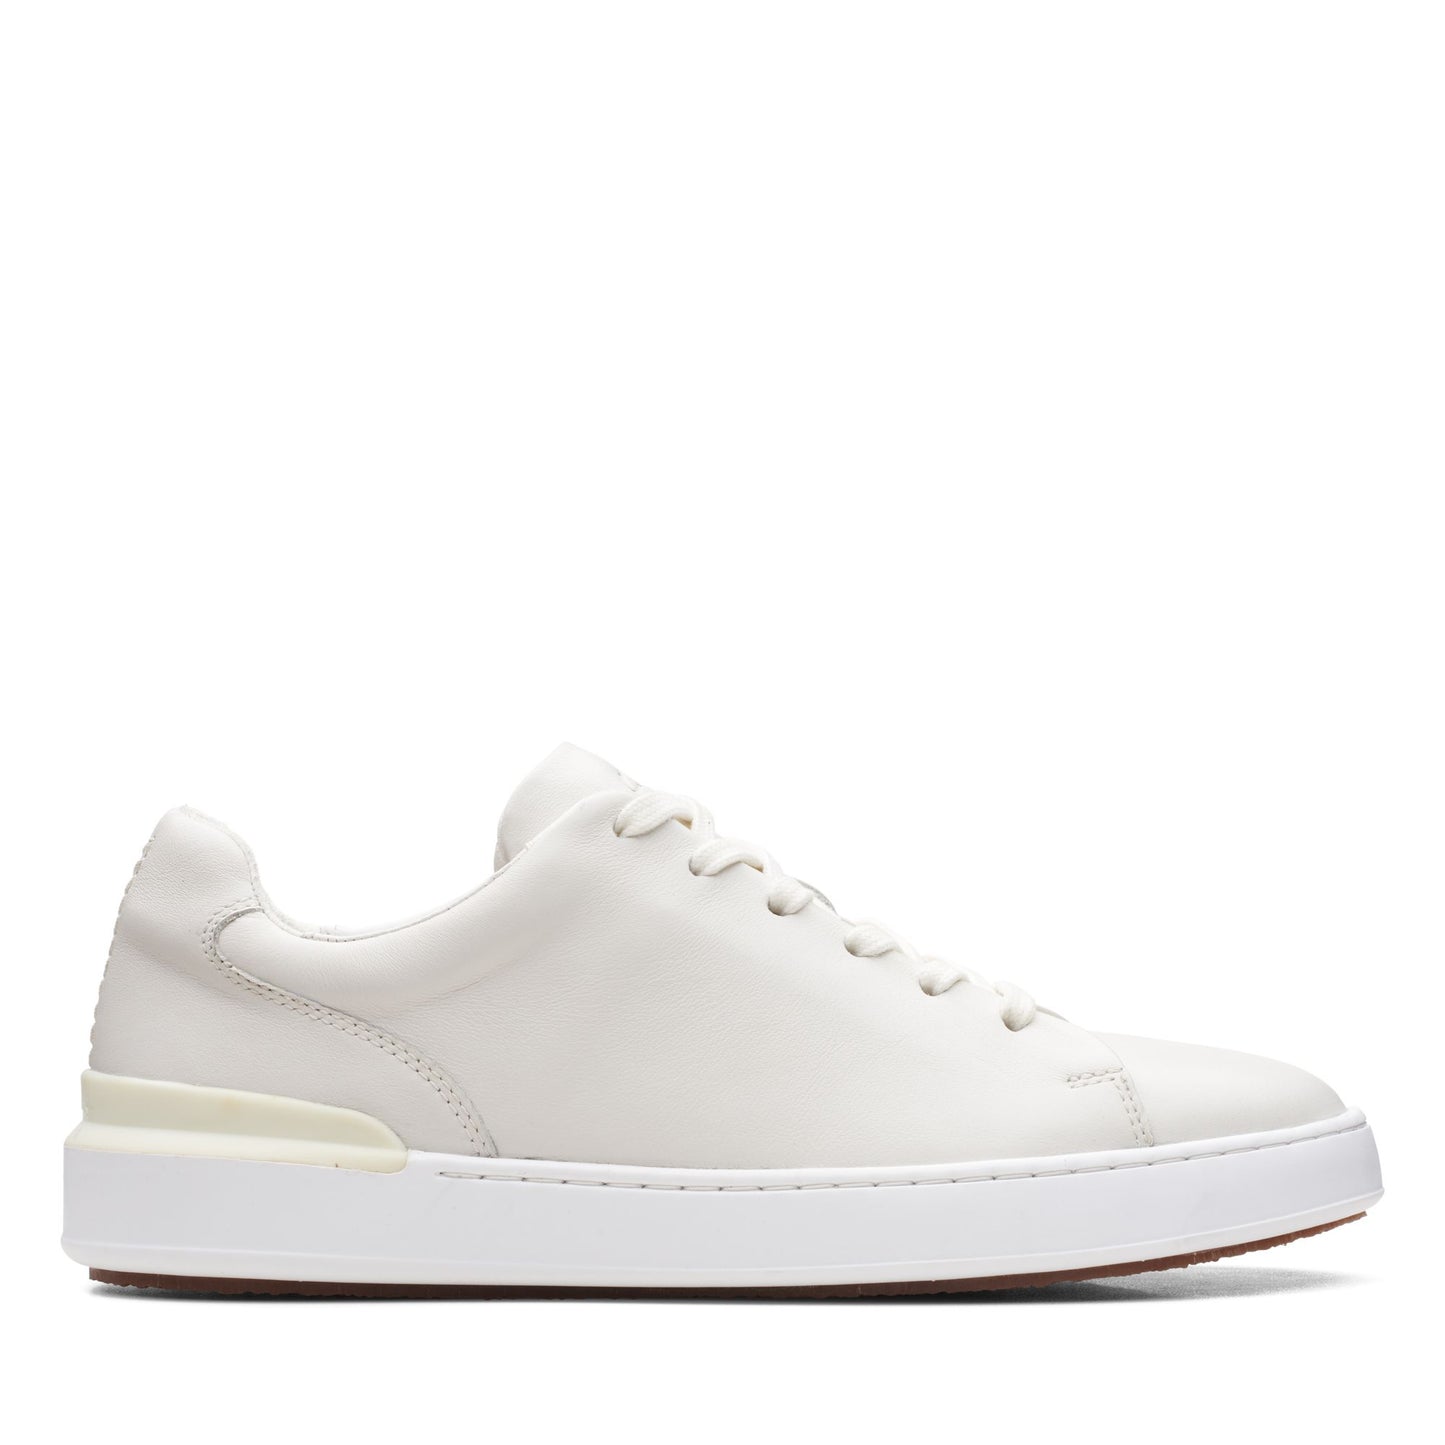 Sneakers De La Marca Clarks Para Hombre Modelo Courtlite Lace White Leather En Color Blanco